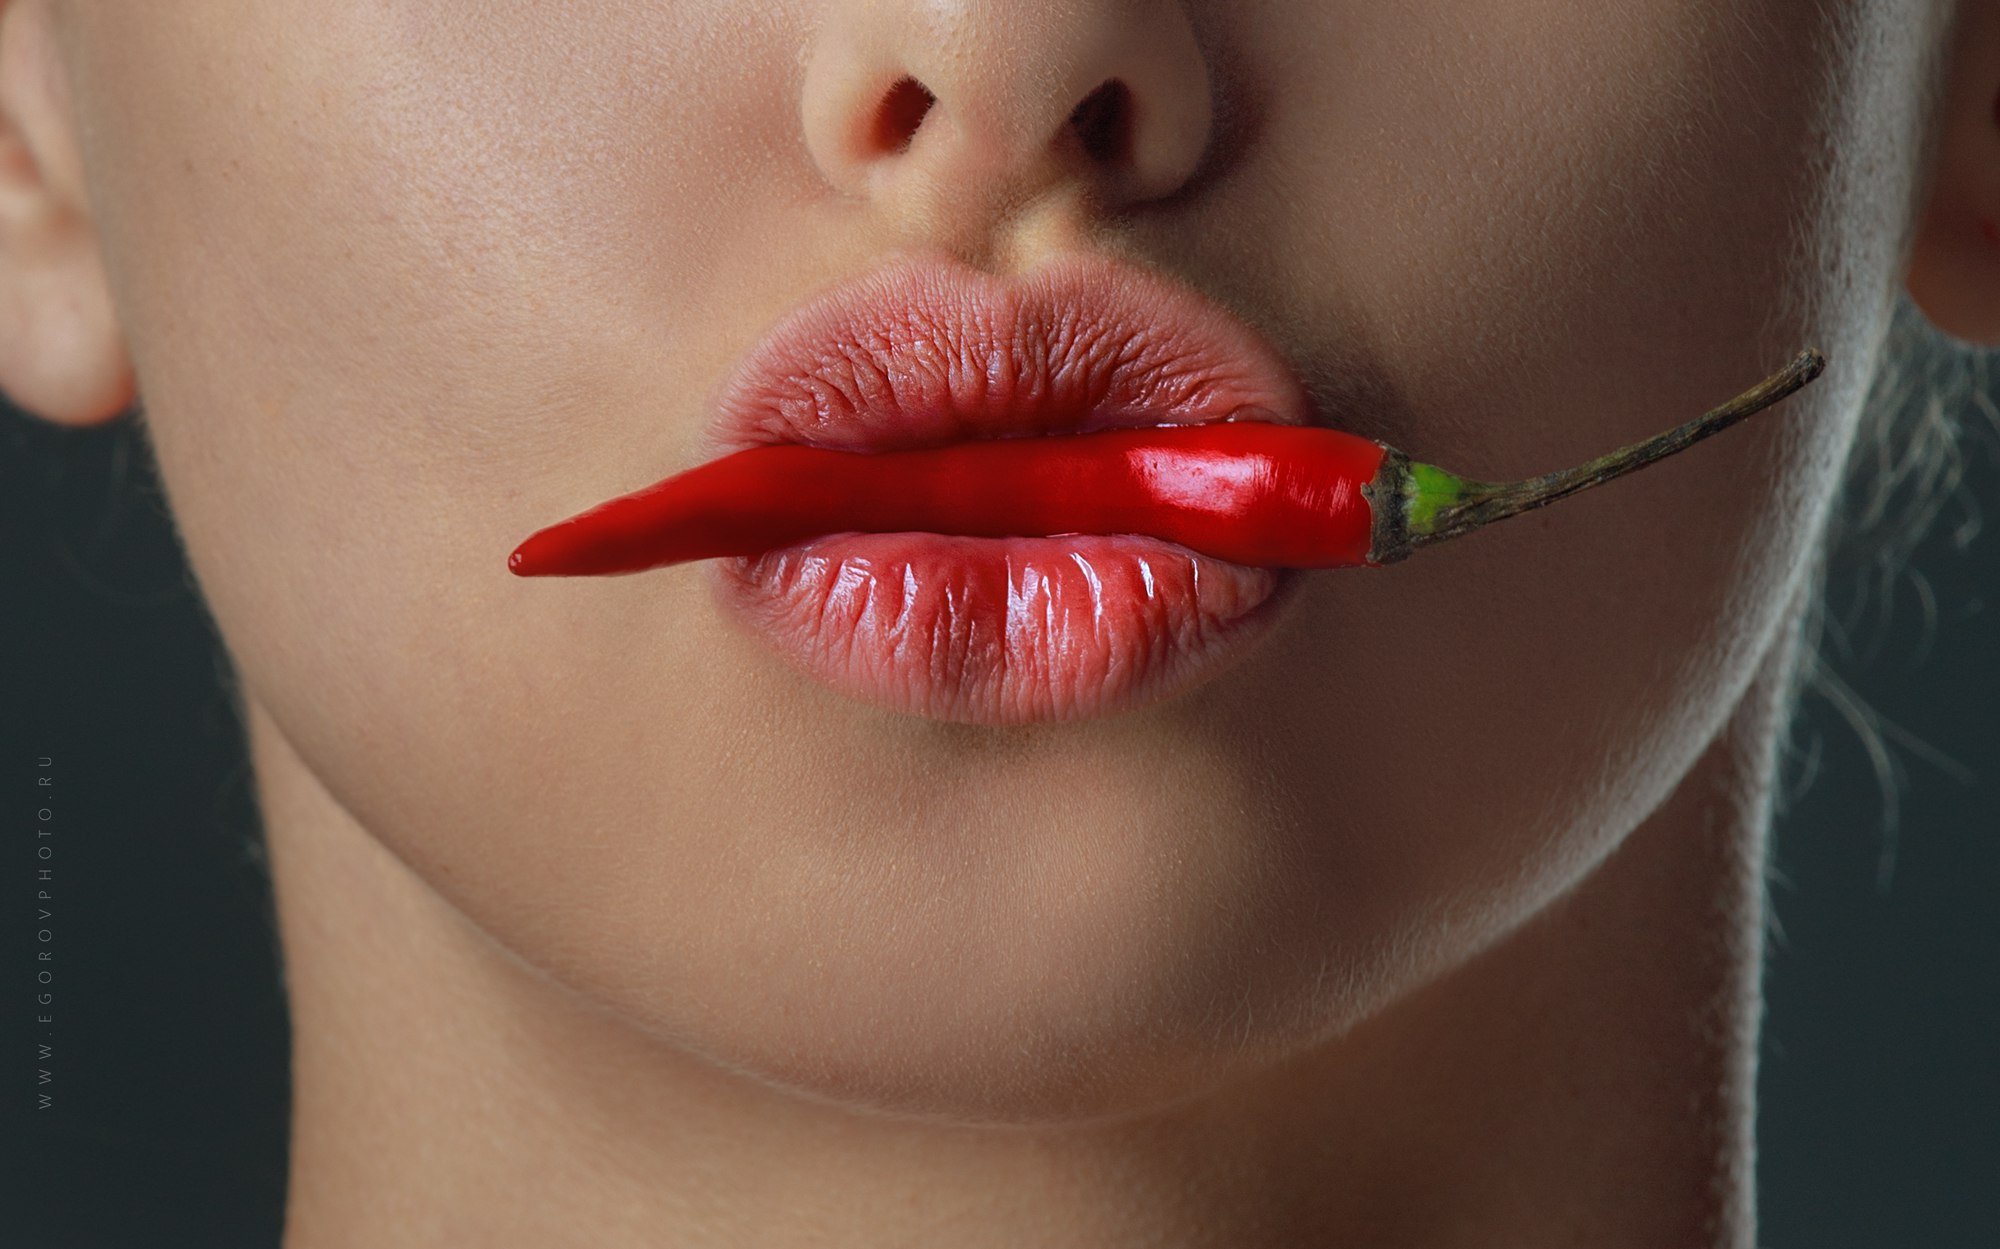 People 2000x1249 women model pepper face lips Igor Egorov juicy lips watermarked closeup